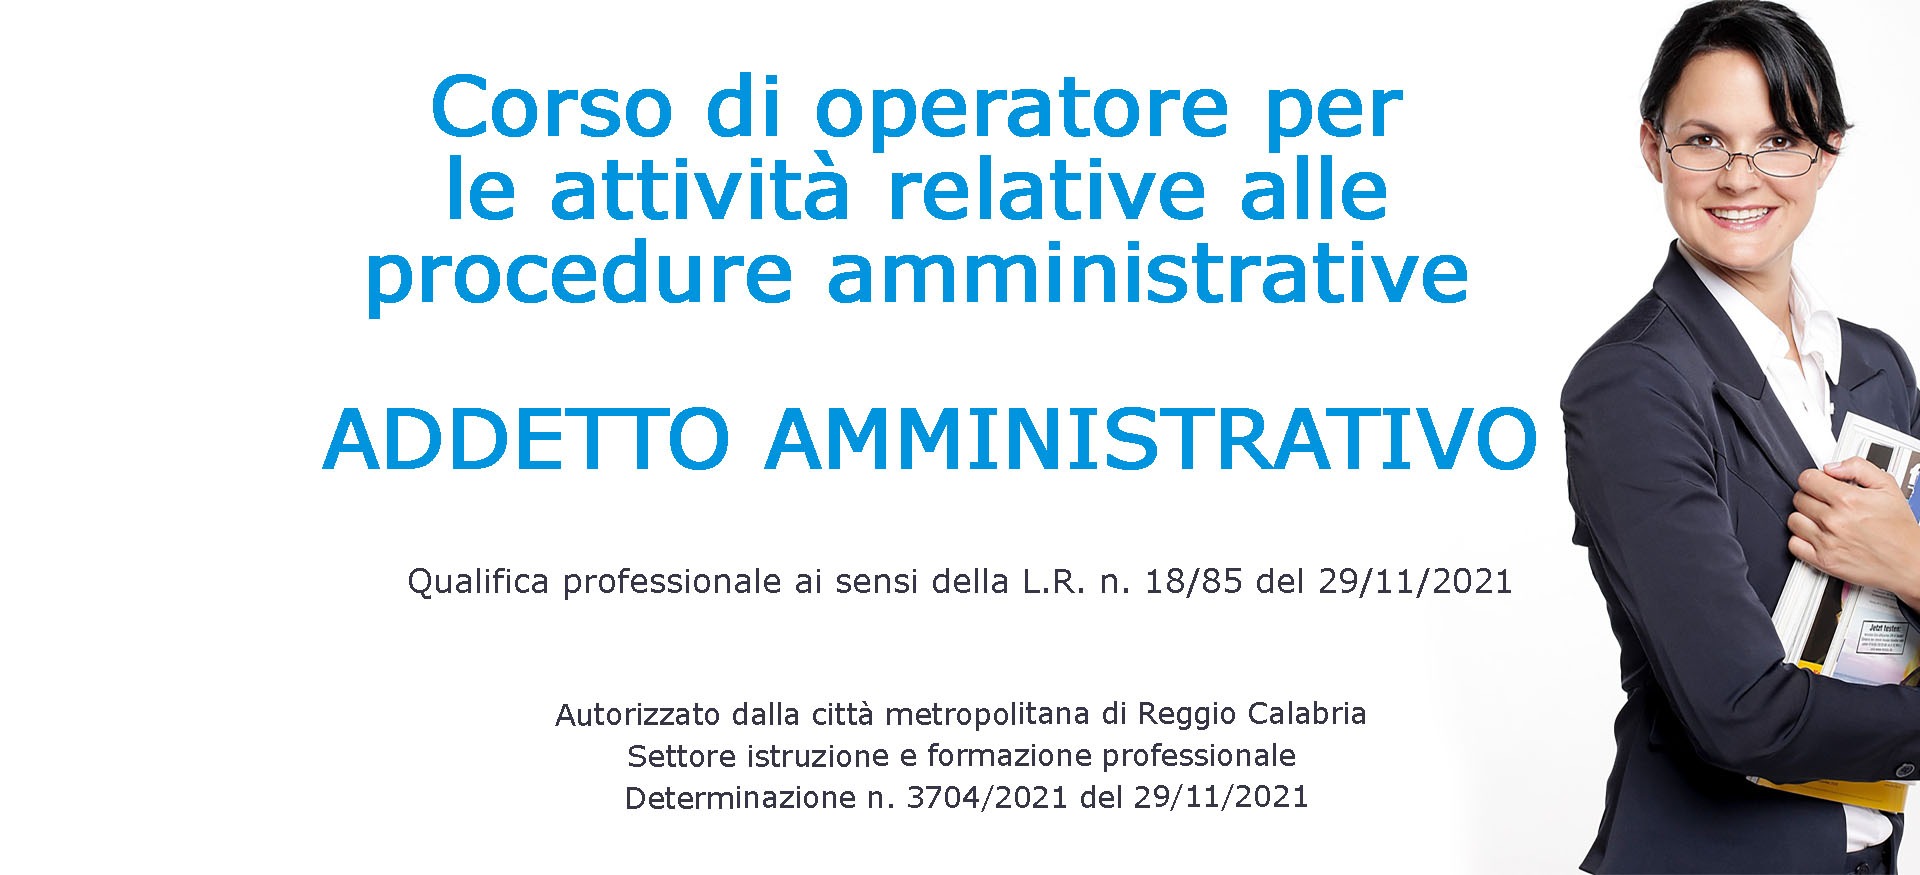 Corso di Operatore per le attività relative alle procedure amministrative - addetto amministrativo